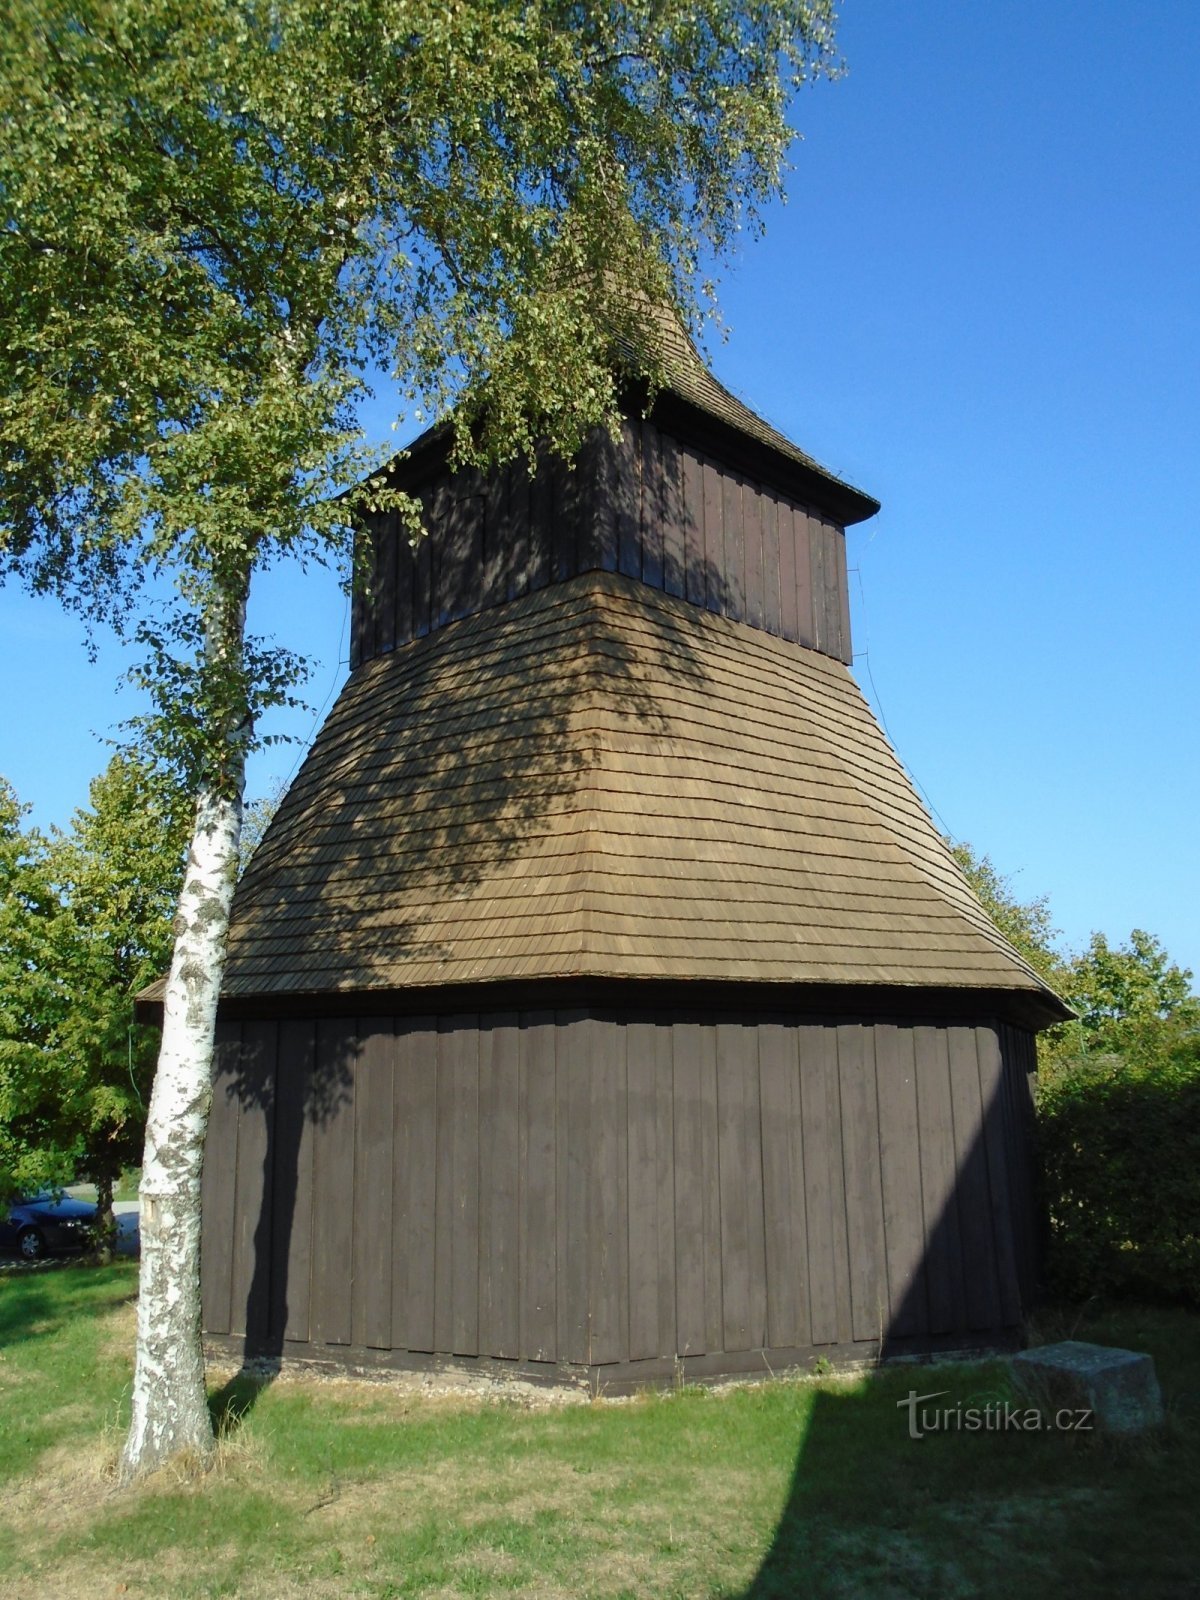 聖教会の鐘楼ヴァーツラフとセント. スタニスラヴァ (Měník)